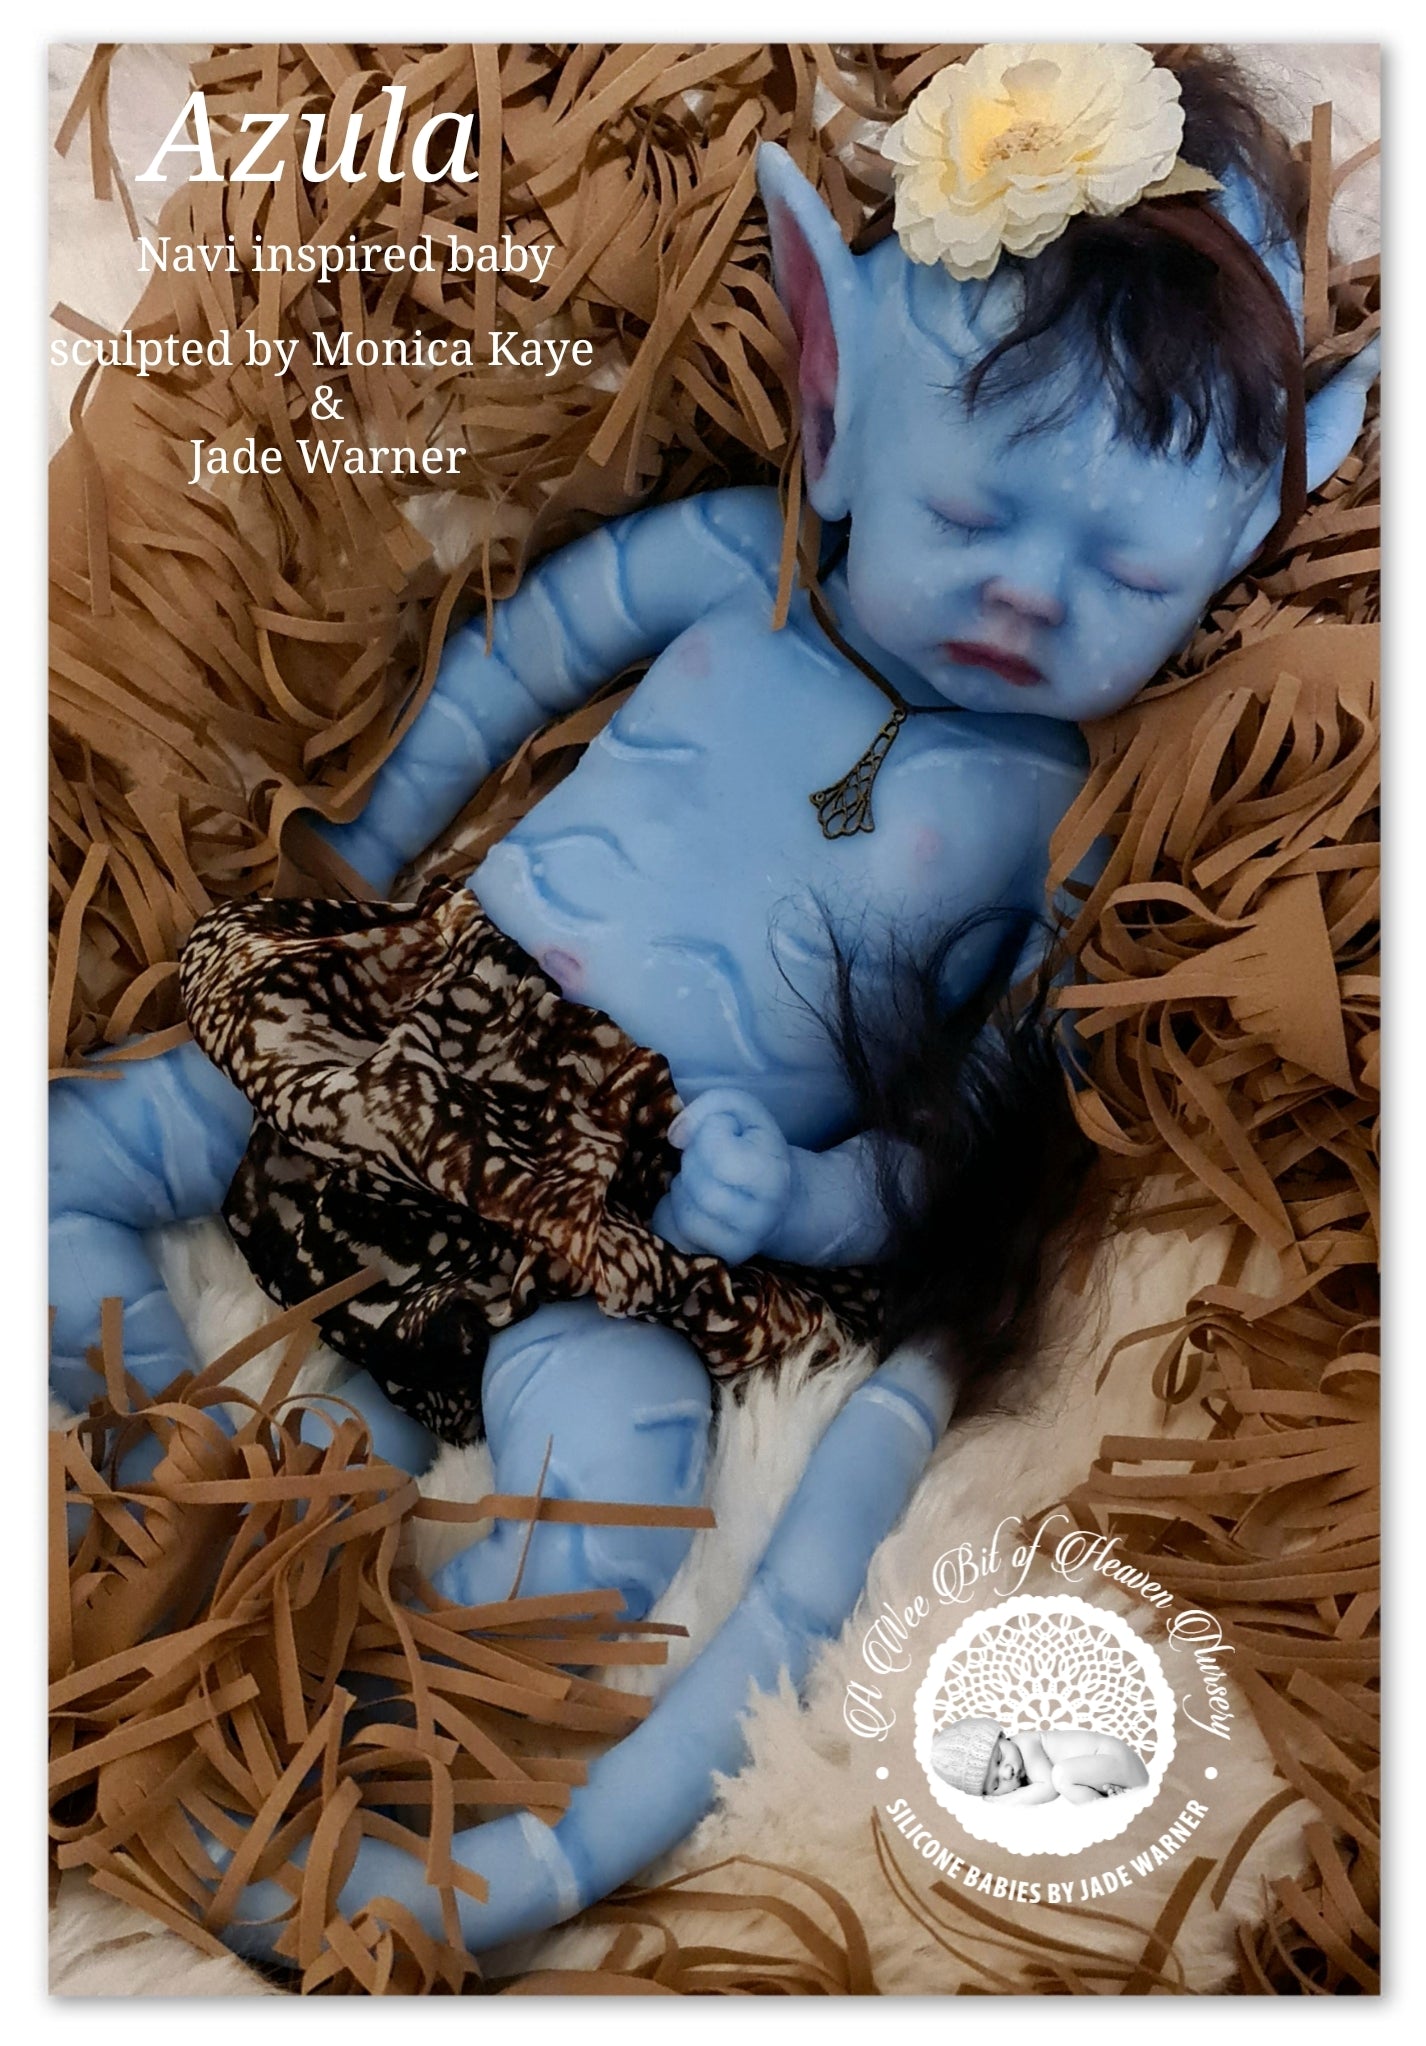 Reborn Baby Dolls - Fully Silicone With Hair, Boy Avatar